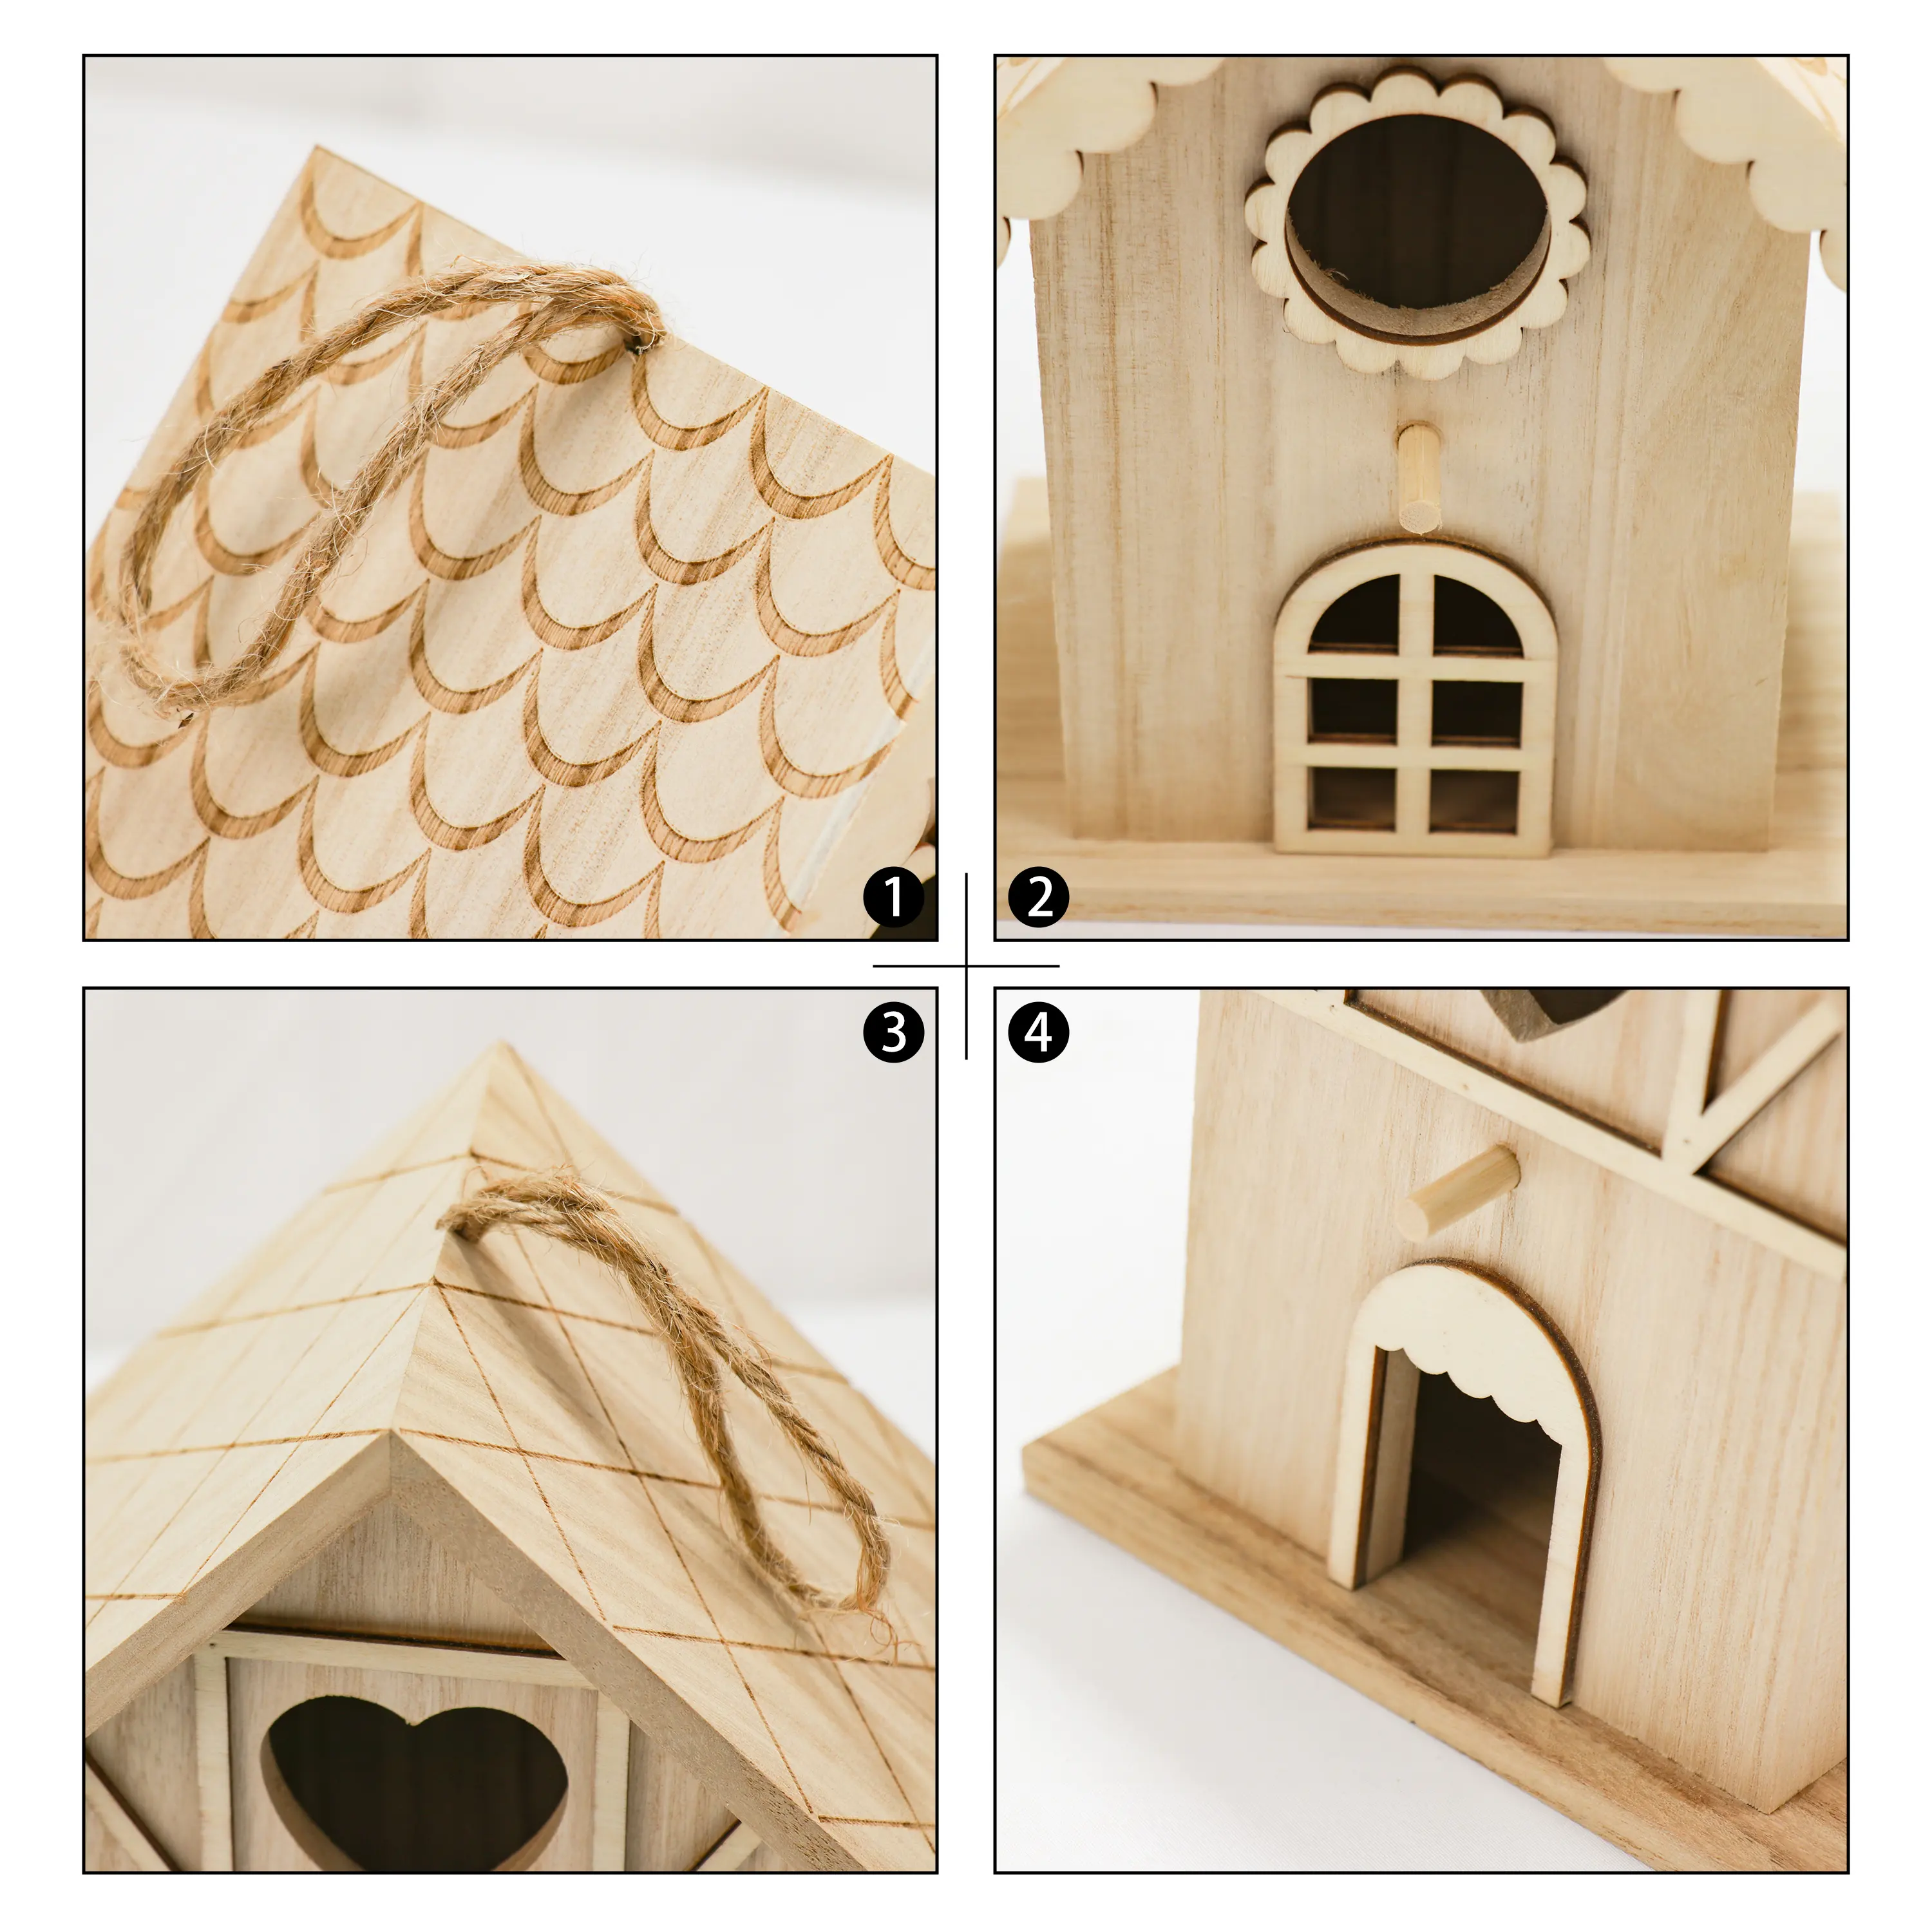 Mini Holz Vogelhaus Kits Vogel häuser zum Malen und Dekorieren für Kinder Kunst handwerk oder Garten projekte